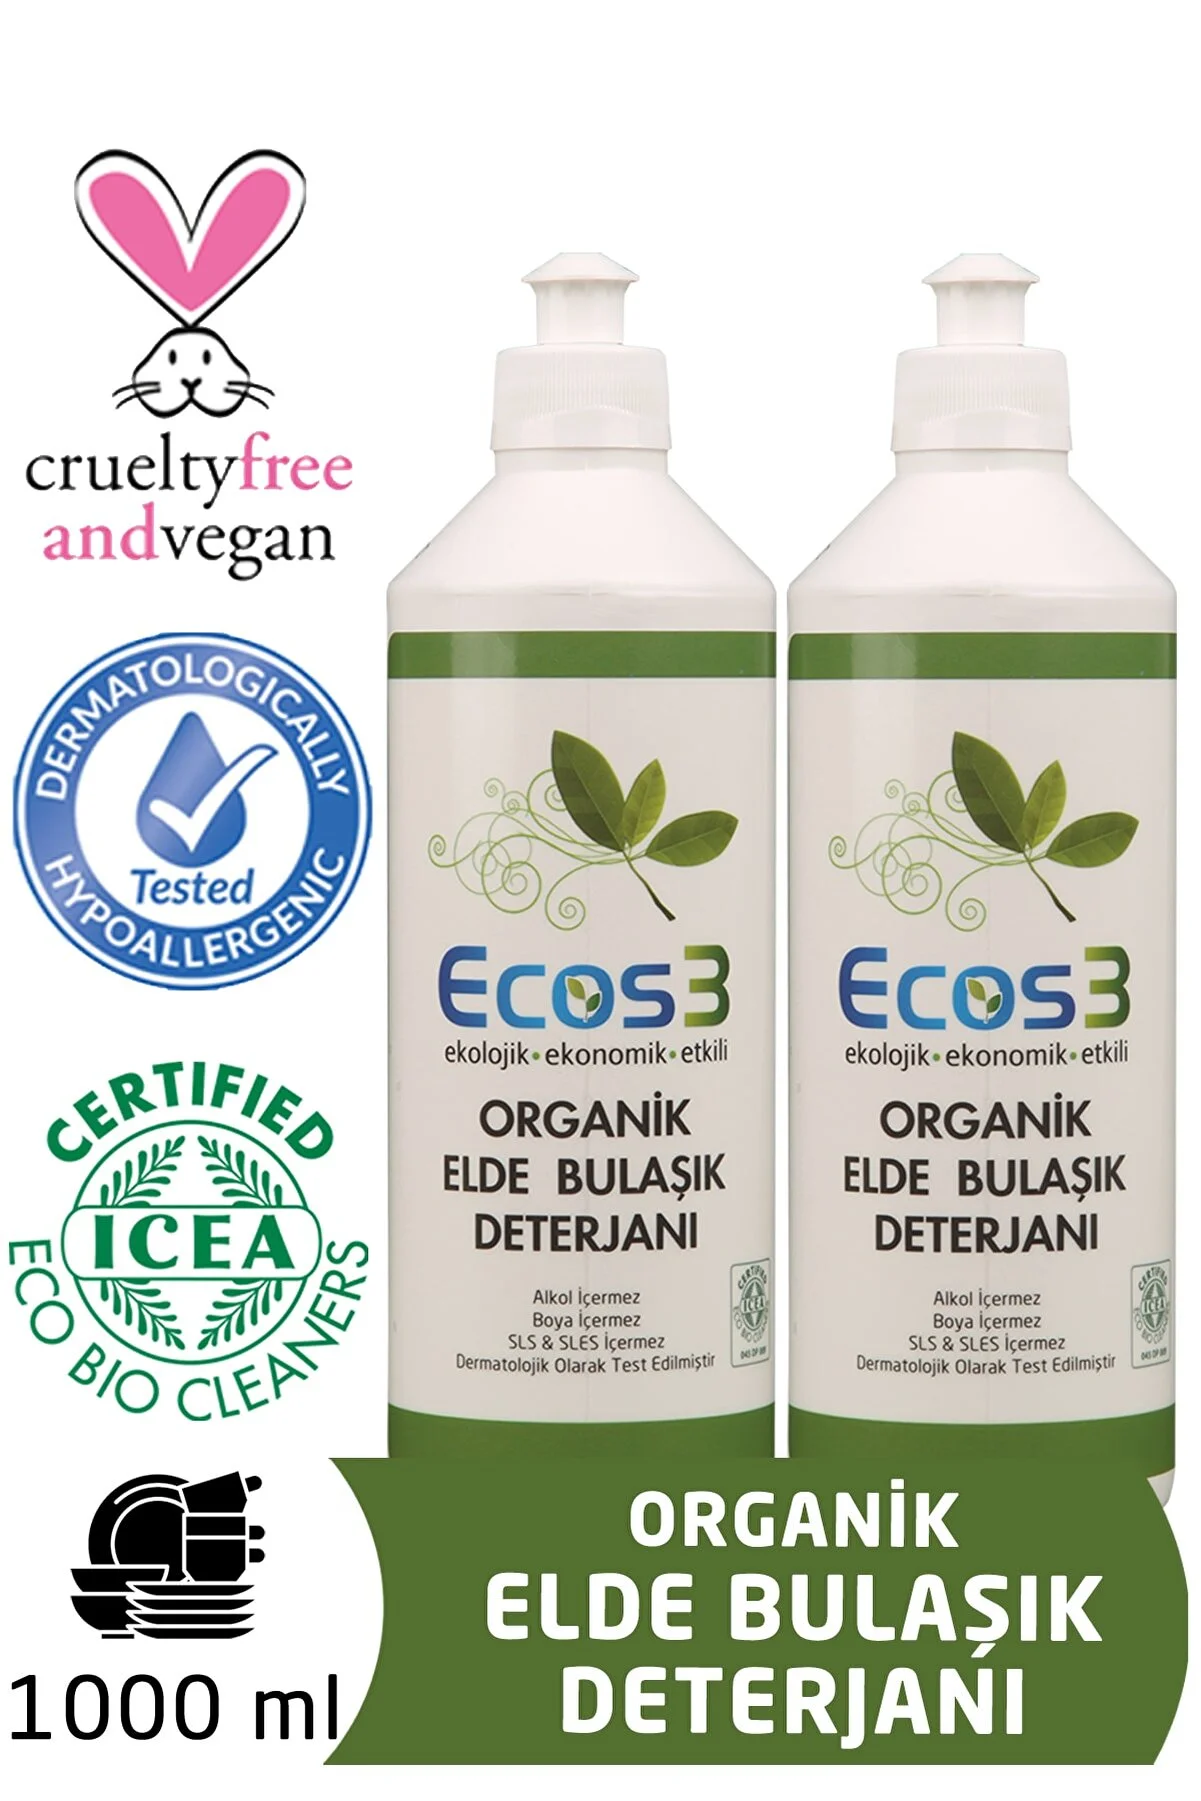 Ecos3 Organik Elde Bulaşık Deterjanı 2’li Set -2 x 500 ml